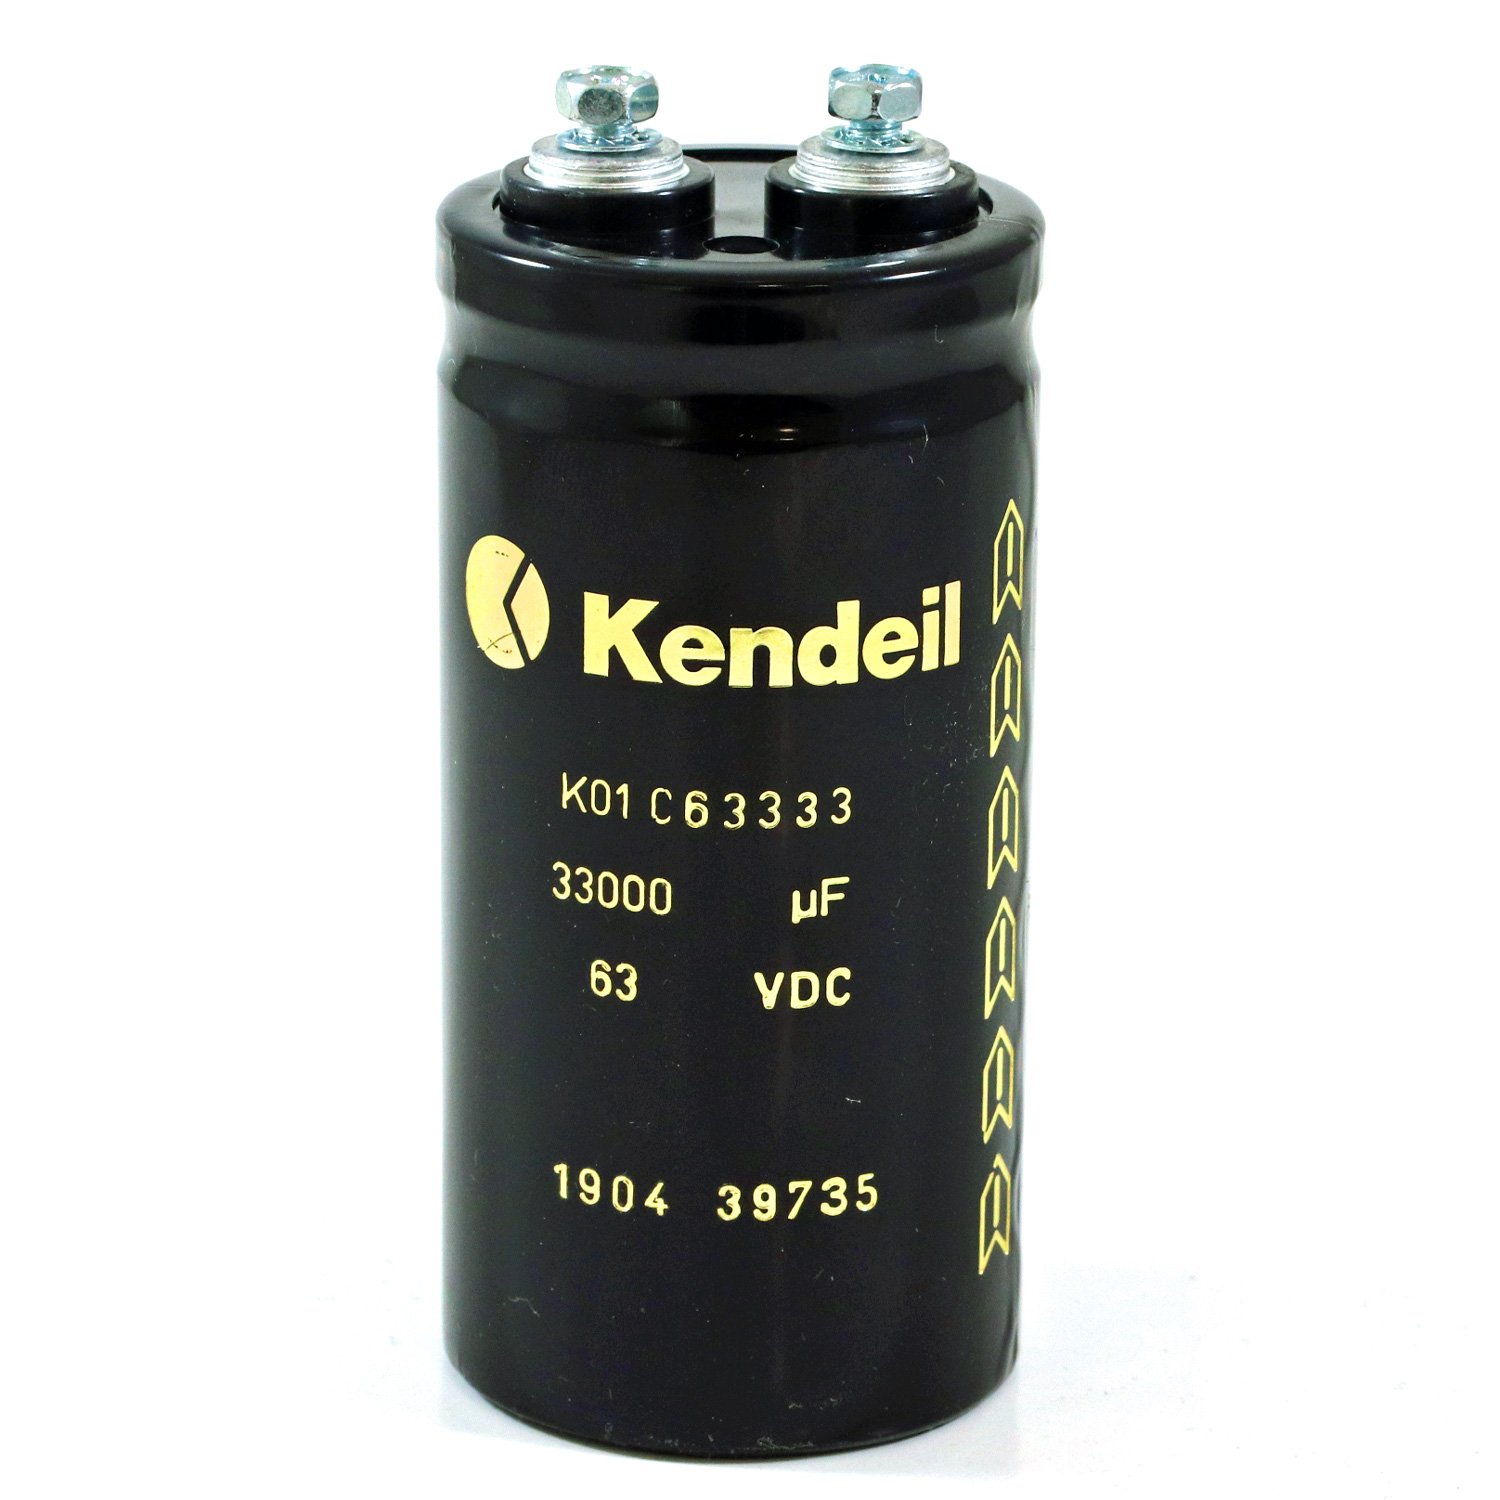 Condensatore Elettrolitico Kendeil 33000uF 63V 51x105 mm Terminali a